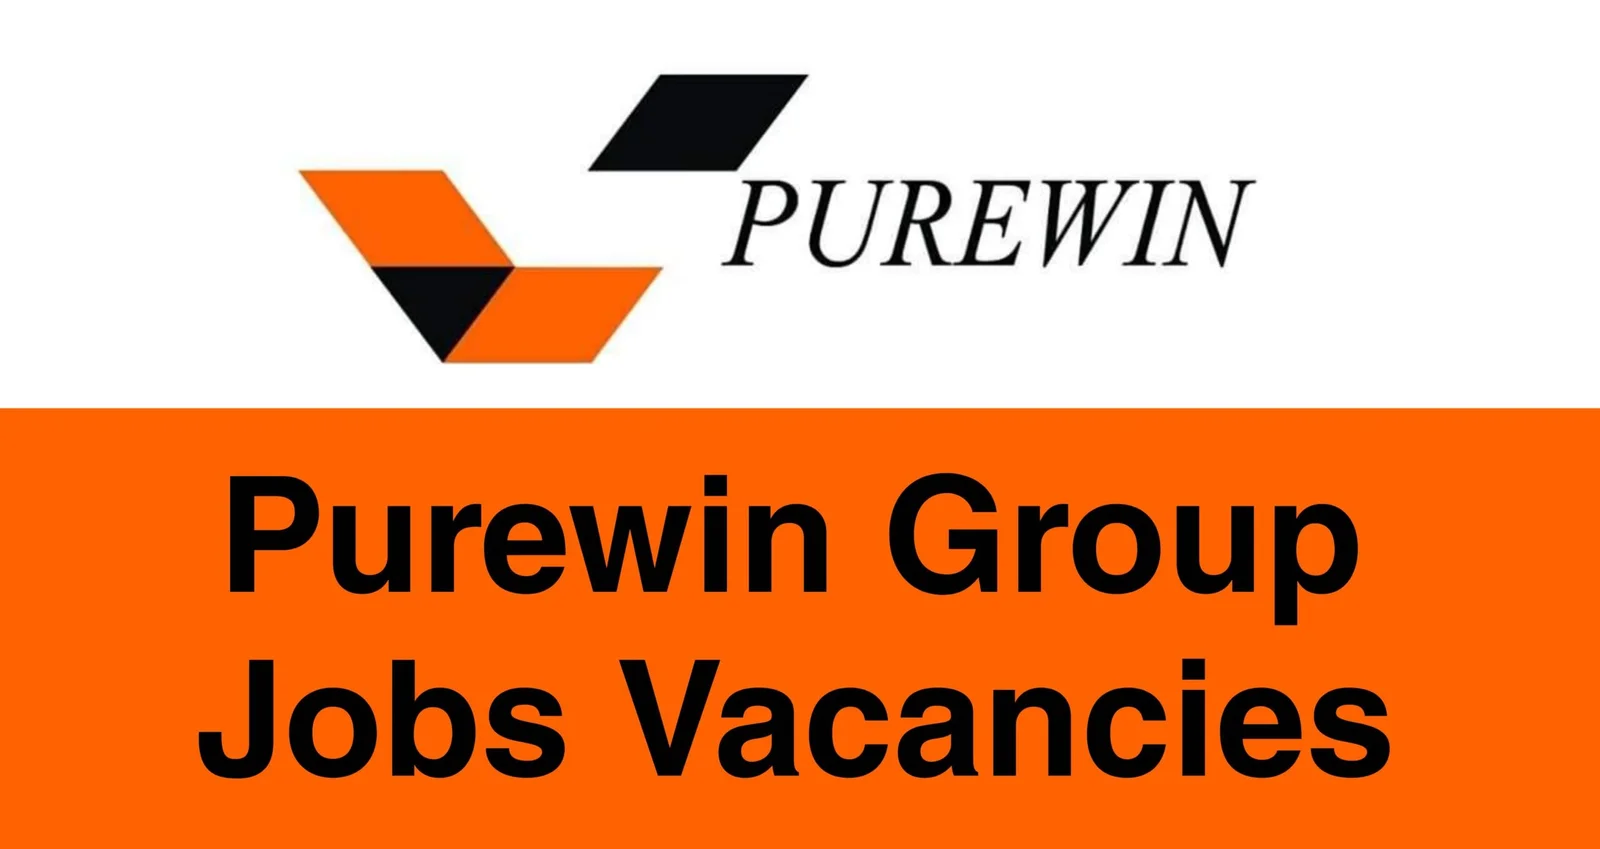 Purewin Group Jobs Vacancies